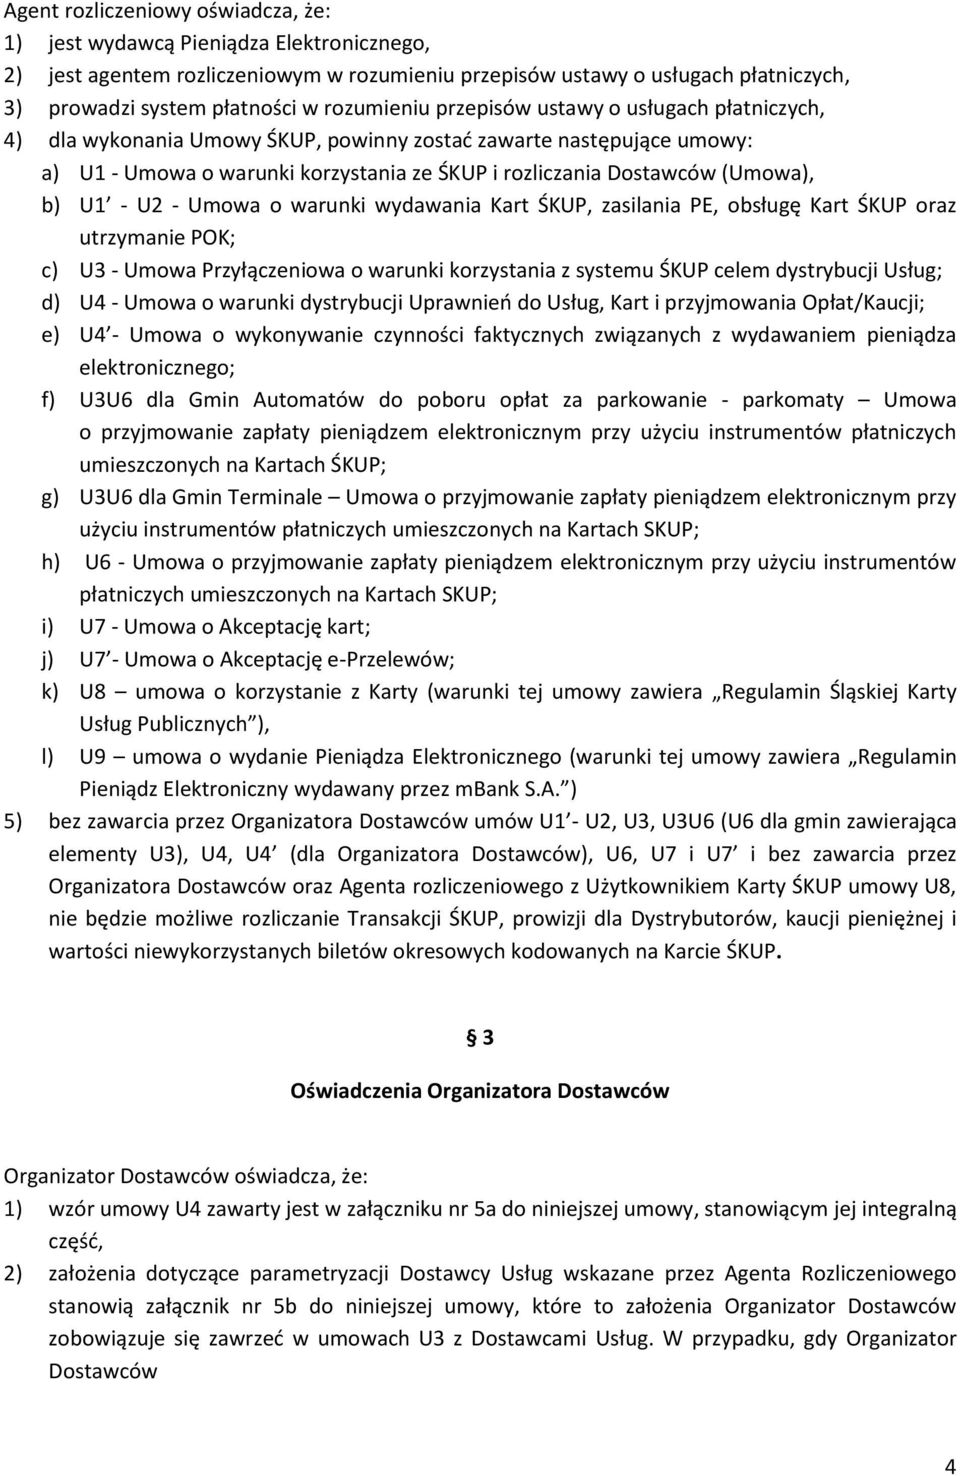 b) U1 - U2 - Umowa o warunki wydawania Kart ŚKUP, zasilania PE, obsługę Kart ŚKUP oraz utrzymanie POK; c) U3 - Umowa Przyłączeniowa o warunki korzystania z systemu ŚKUP celem dystrybucji Usług; d) U4